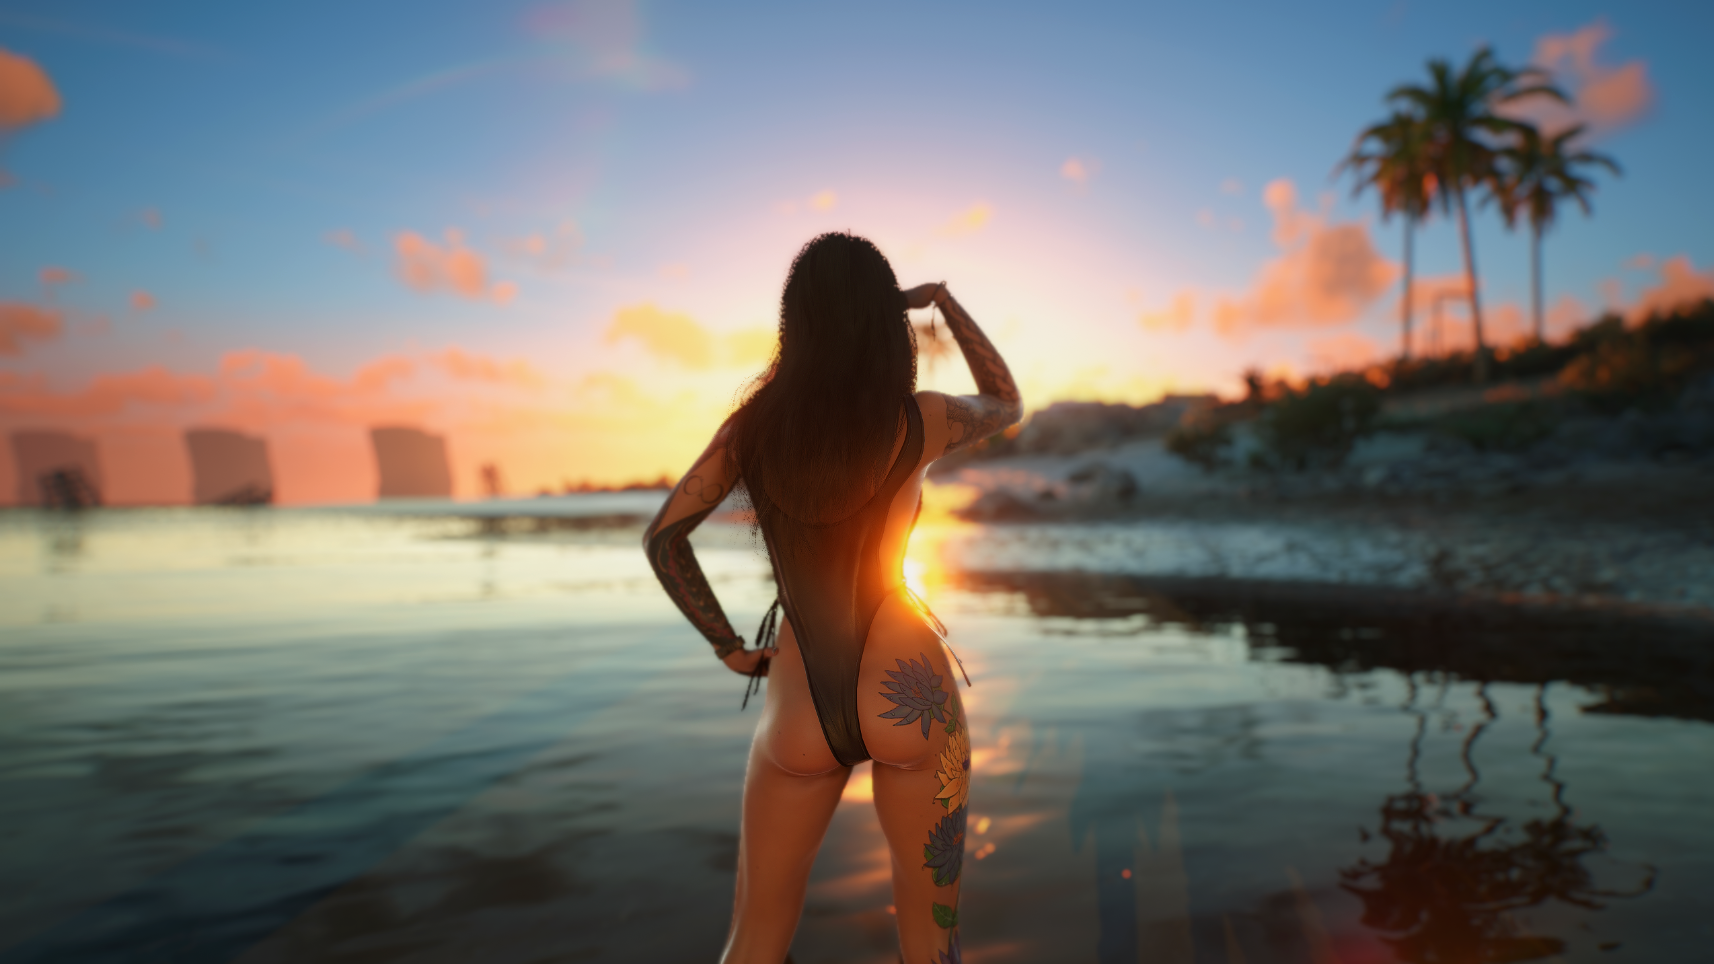 Super_model Ви во время заката на диком пляже.